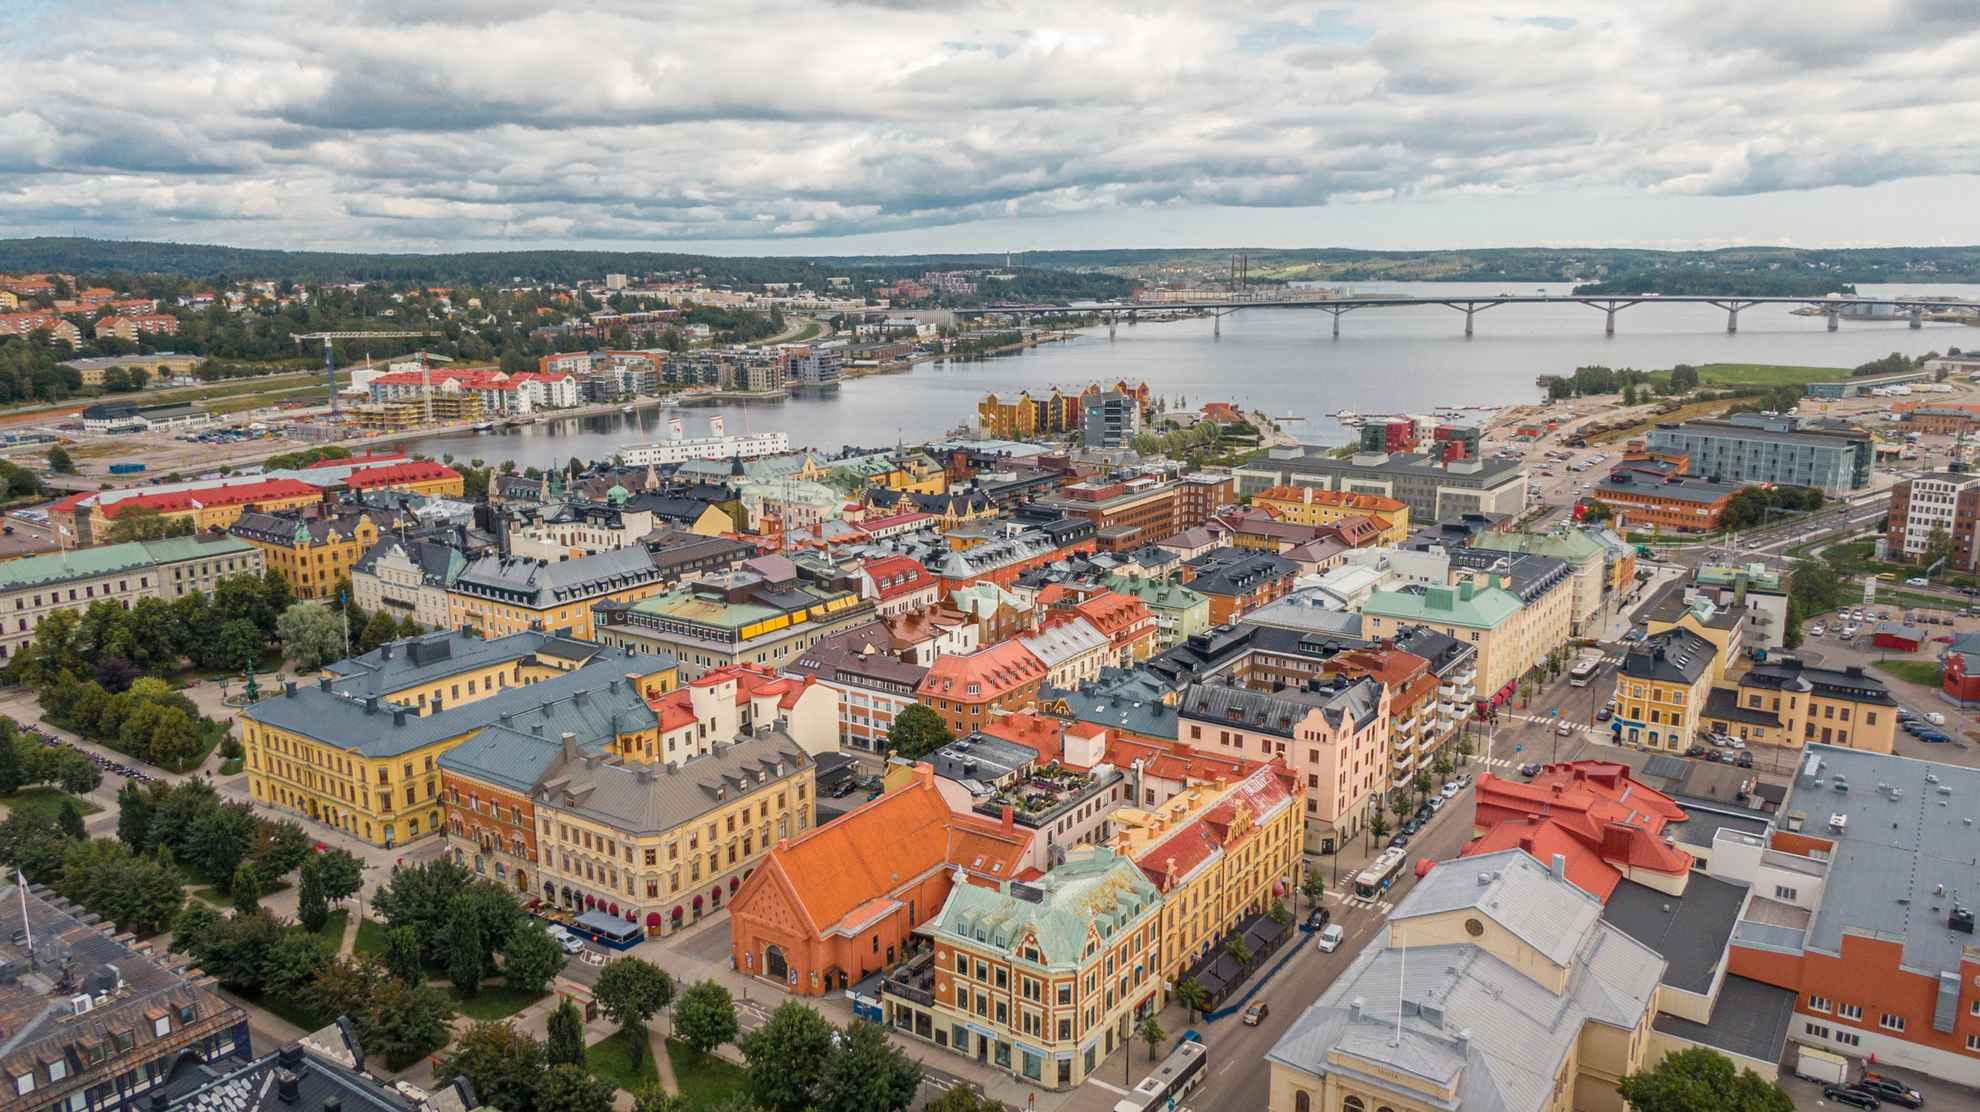 Luchtfoto van de stad Sundsvall. Op de achtergrond is een lange brug te zien.